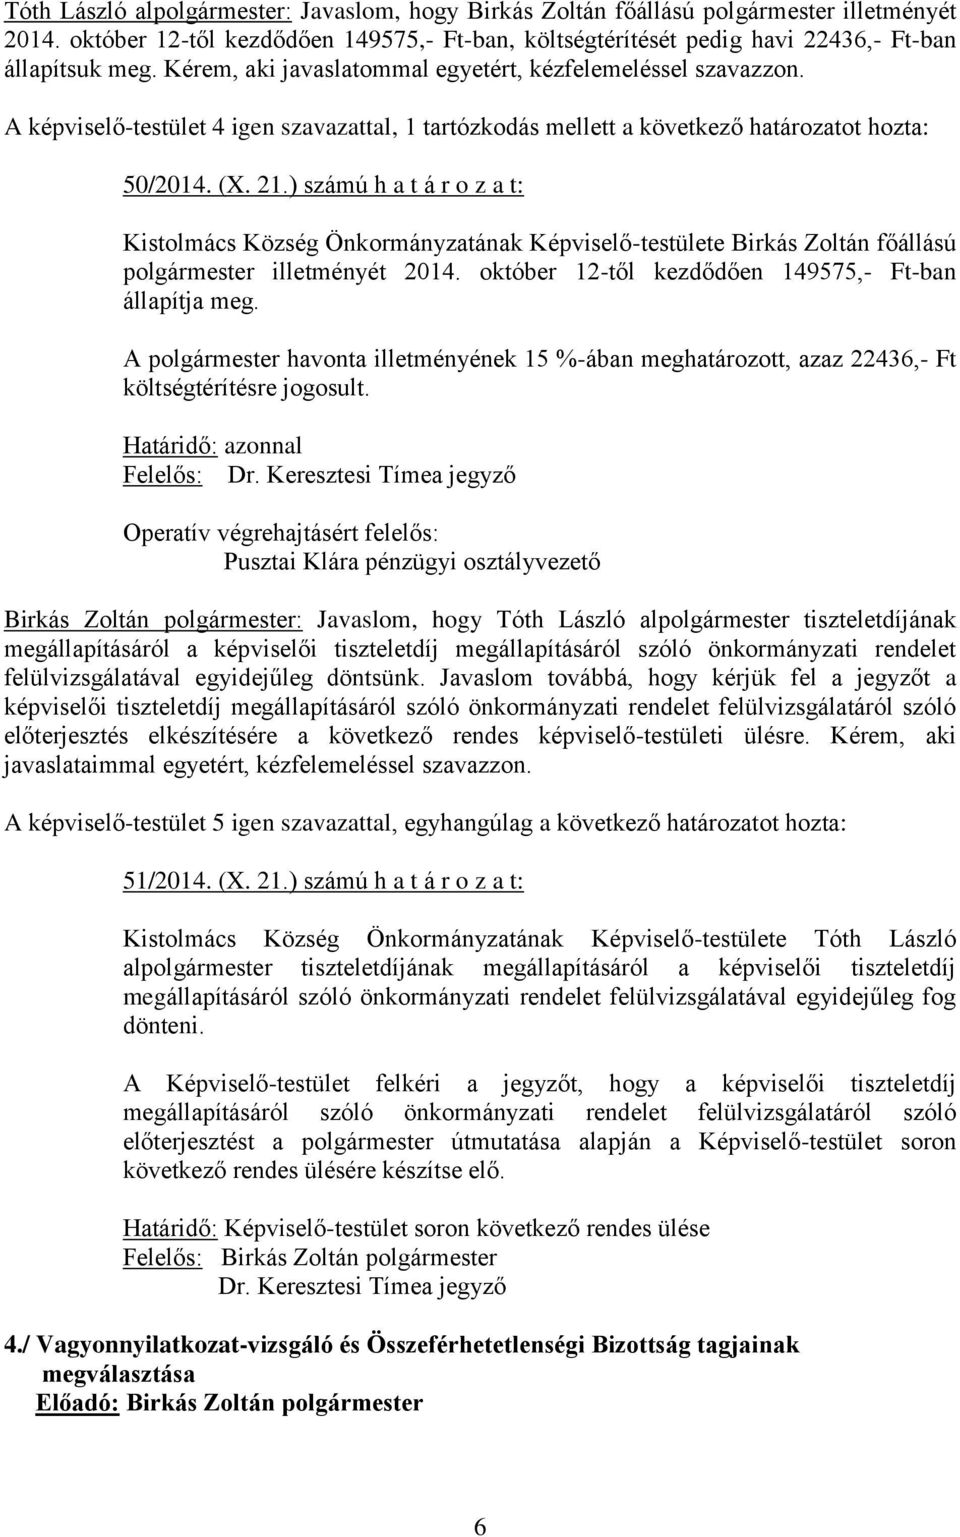 ) számú h a t á r o z a t: Kistolmács Község Önkormányzatának Képviselő-testülete Birkás Zoltán főállású polgármester illetményét 2014. október 12-től kezdődően 149575,- Ft-ban állapítja meg.